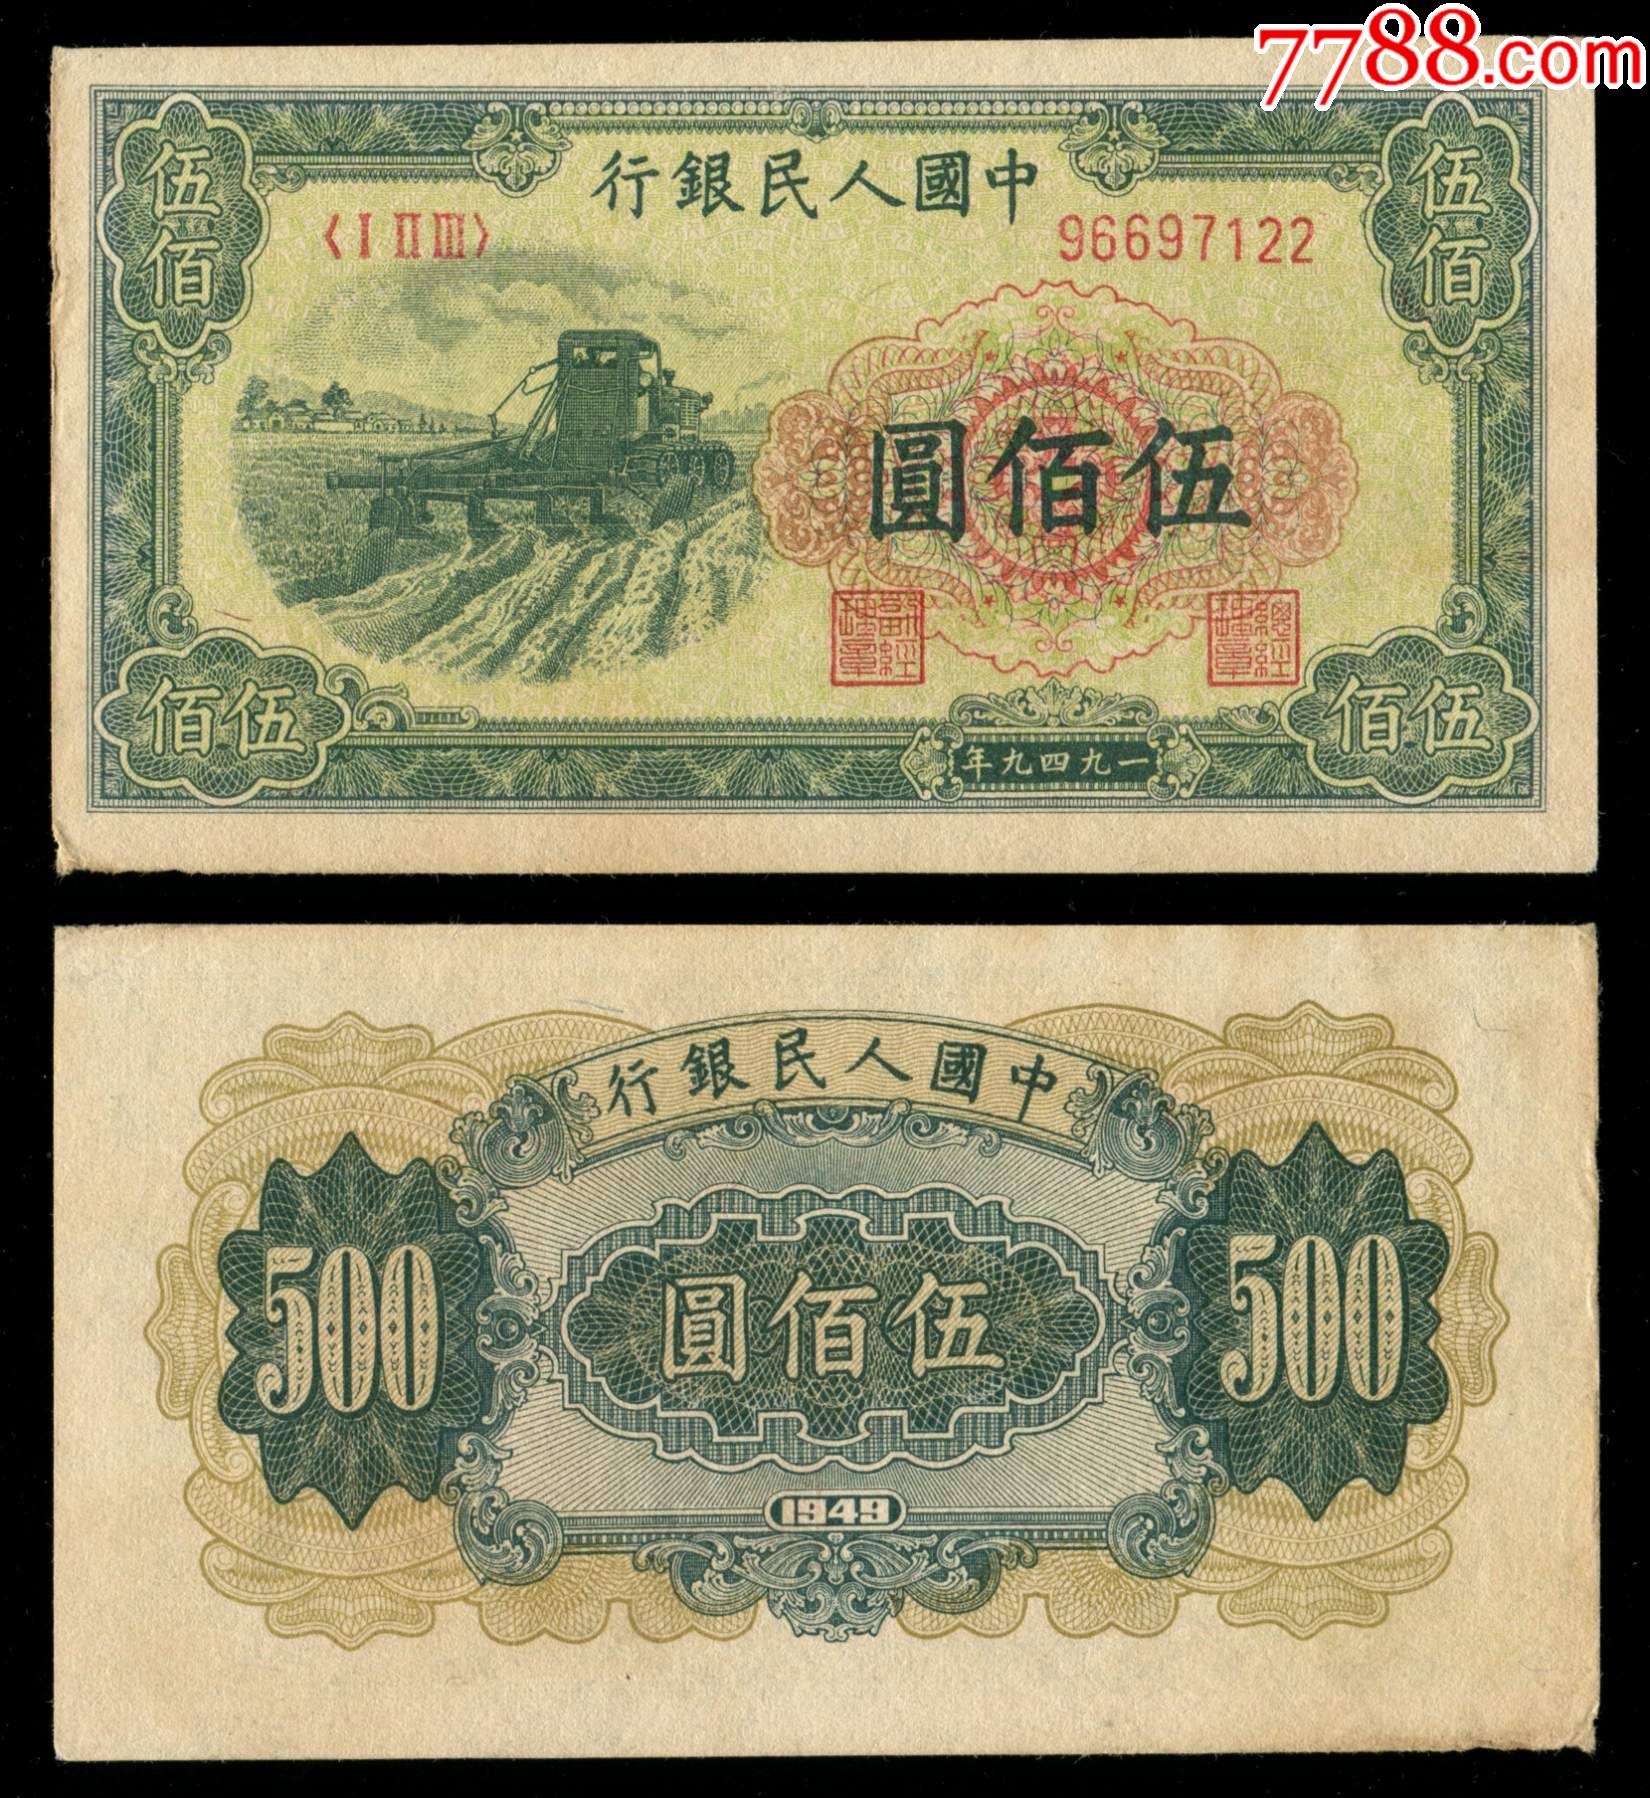 中国人民银行第一版人民币500元(收割机)